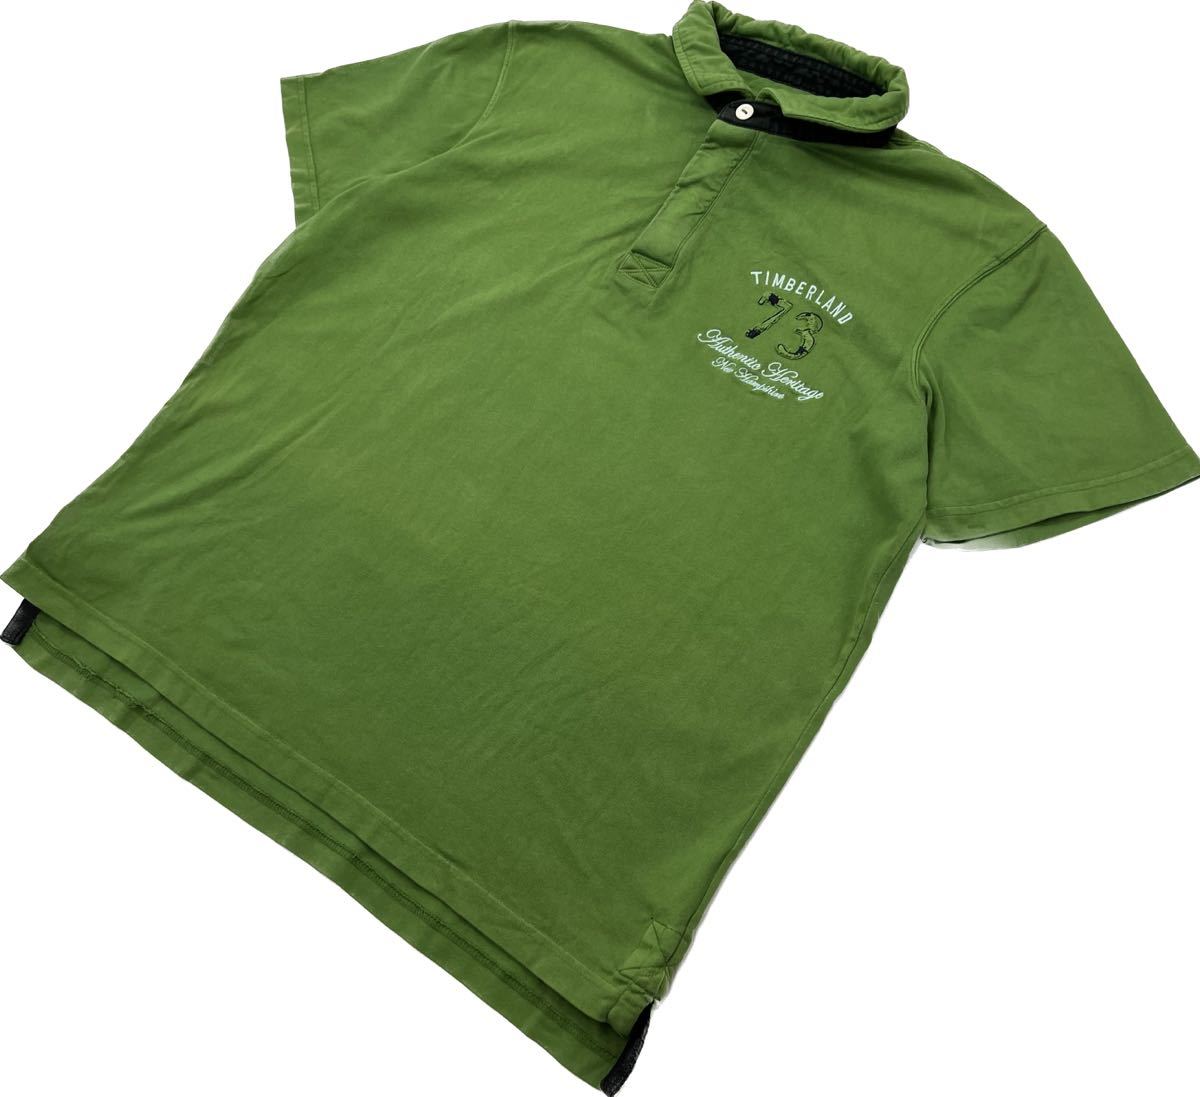 Timberland * мягкий оттенок * рубашка-поло Rugger рубашка короткий рукав зеленый XXL довольно большой American Casual Street б/у одежда стандартный Timberland #AE272